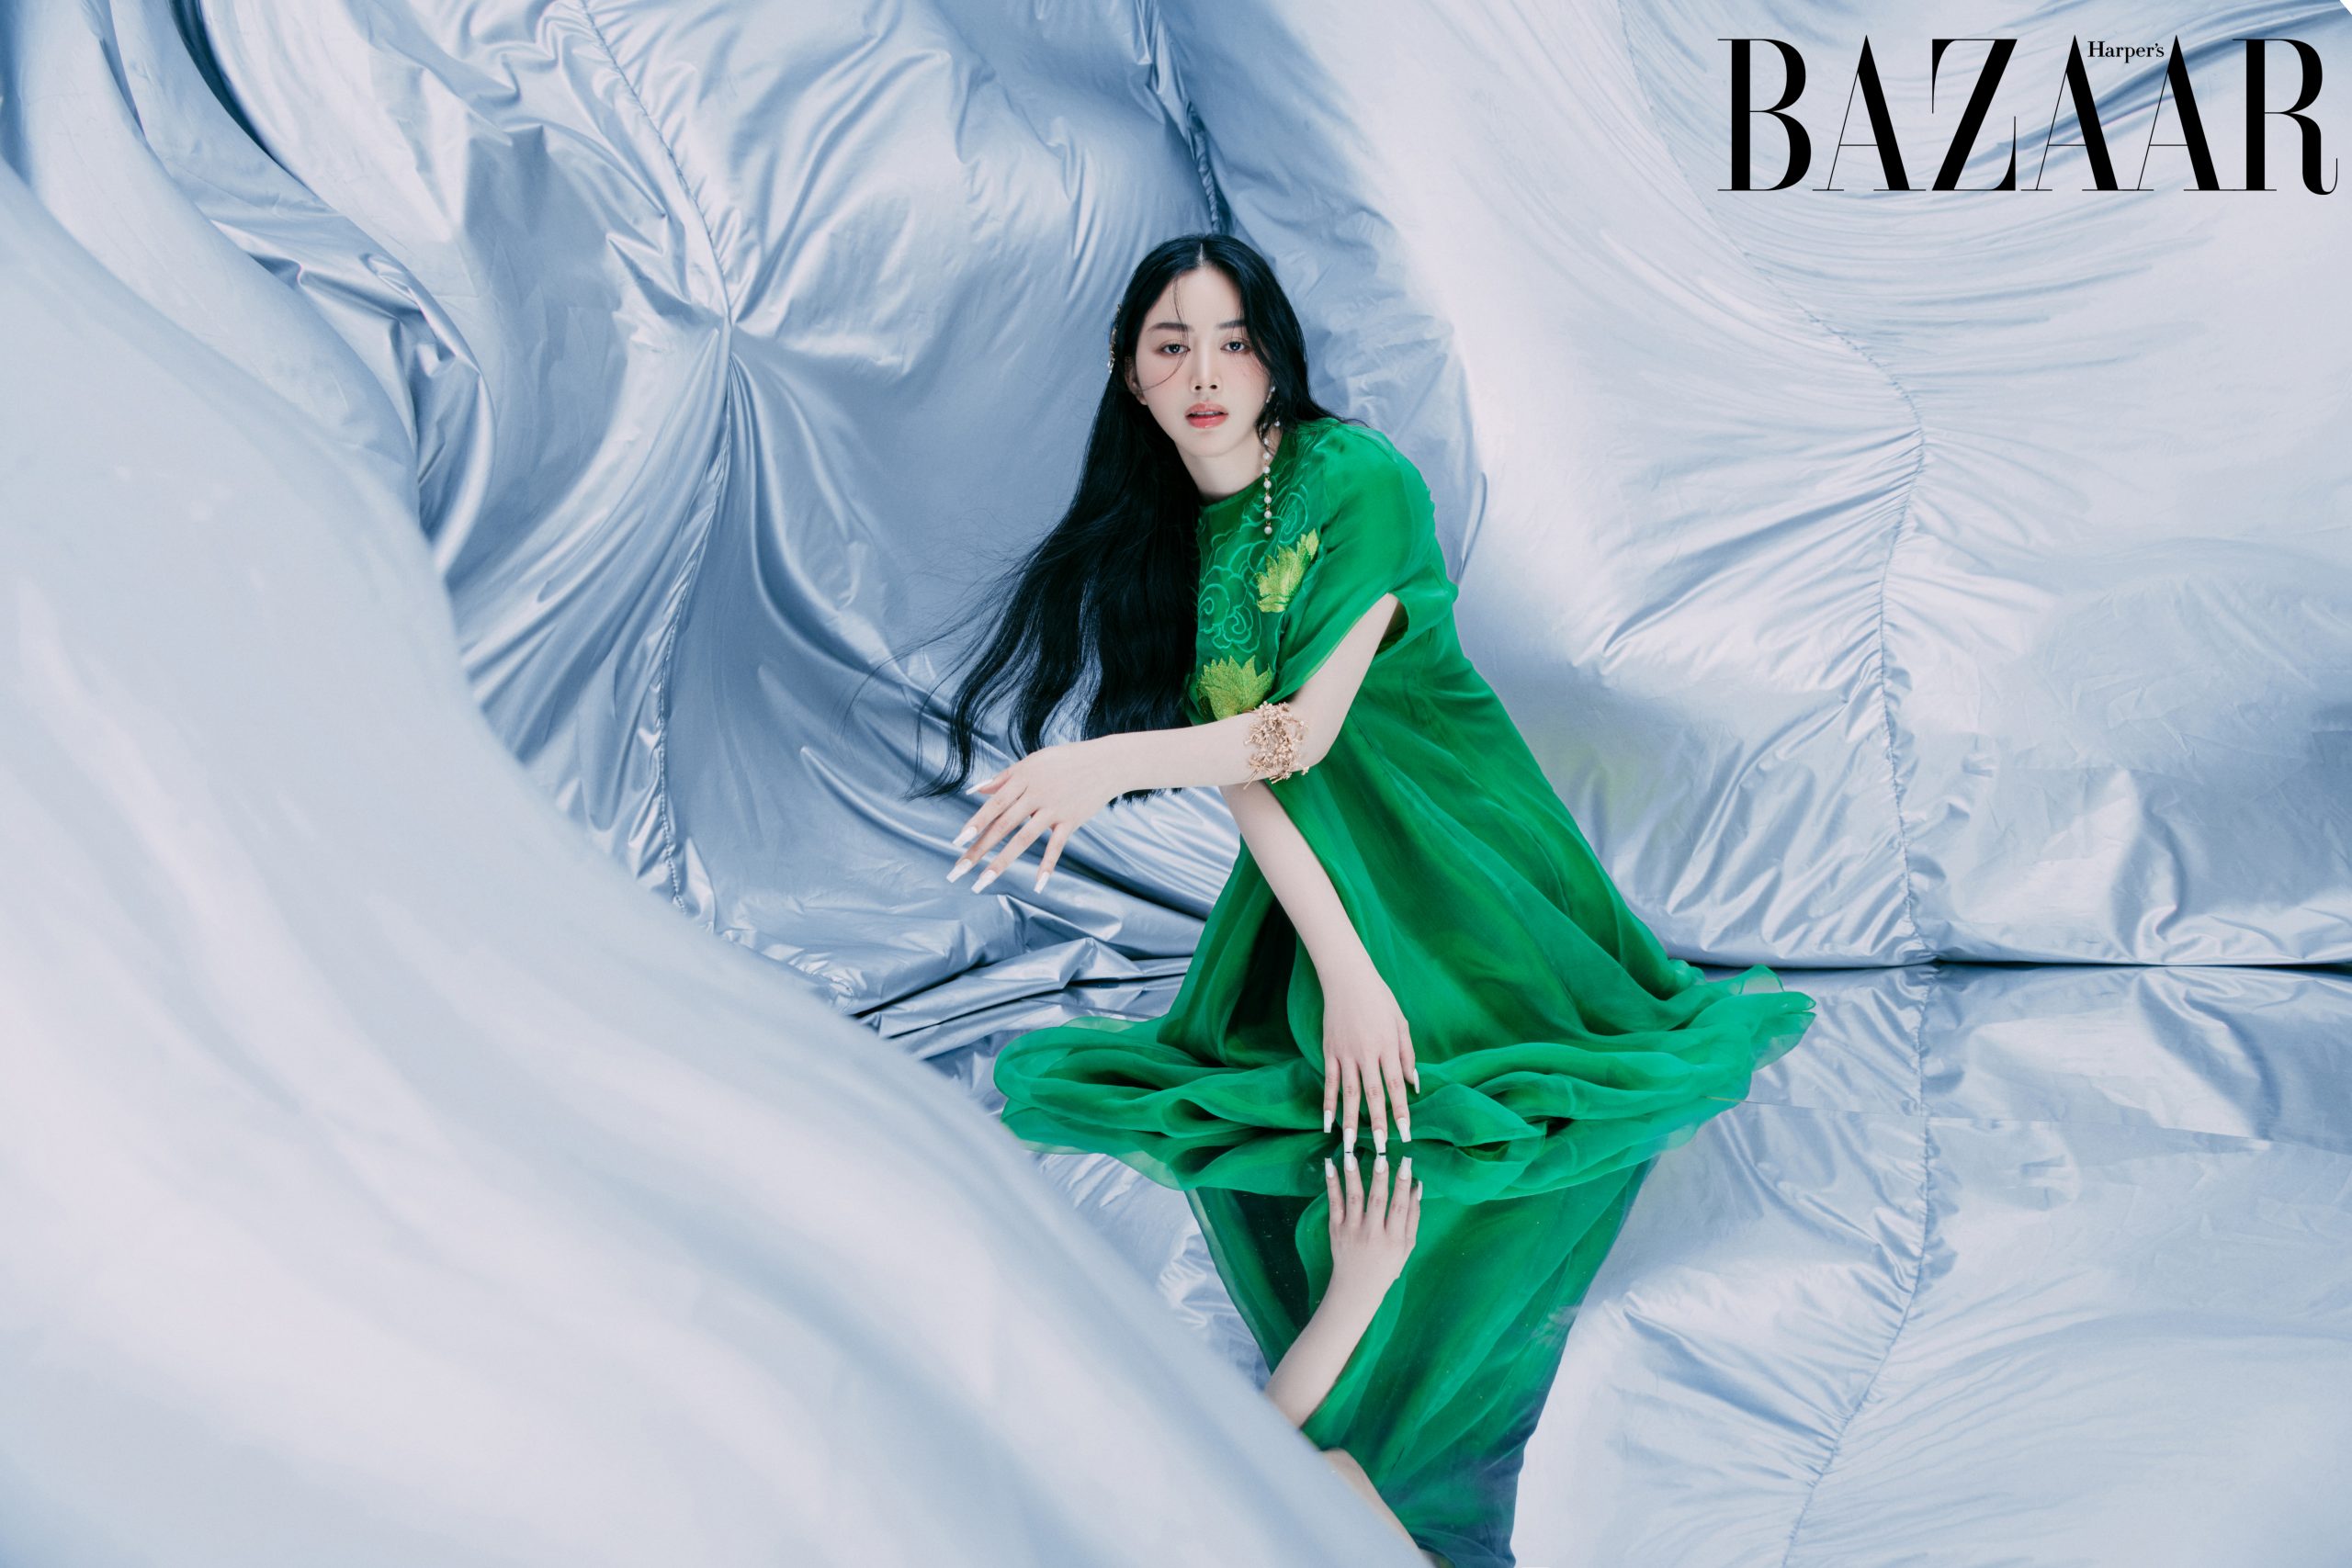 Harper's Bazaar_Mai Thanh Hà và Hoàng Ku bộ ảnh_14